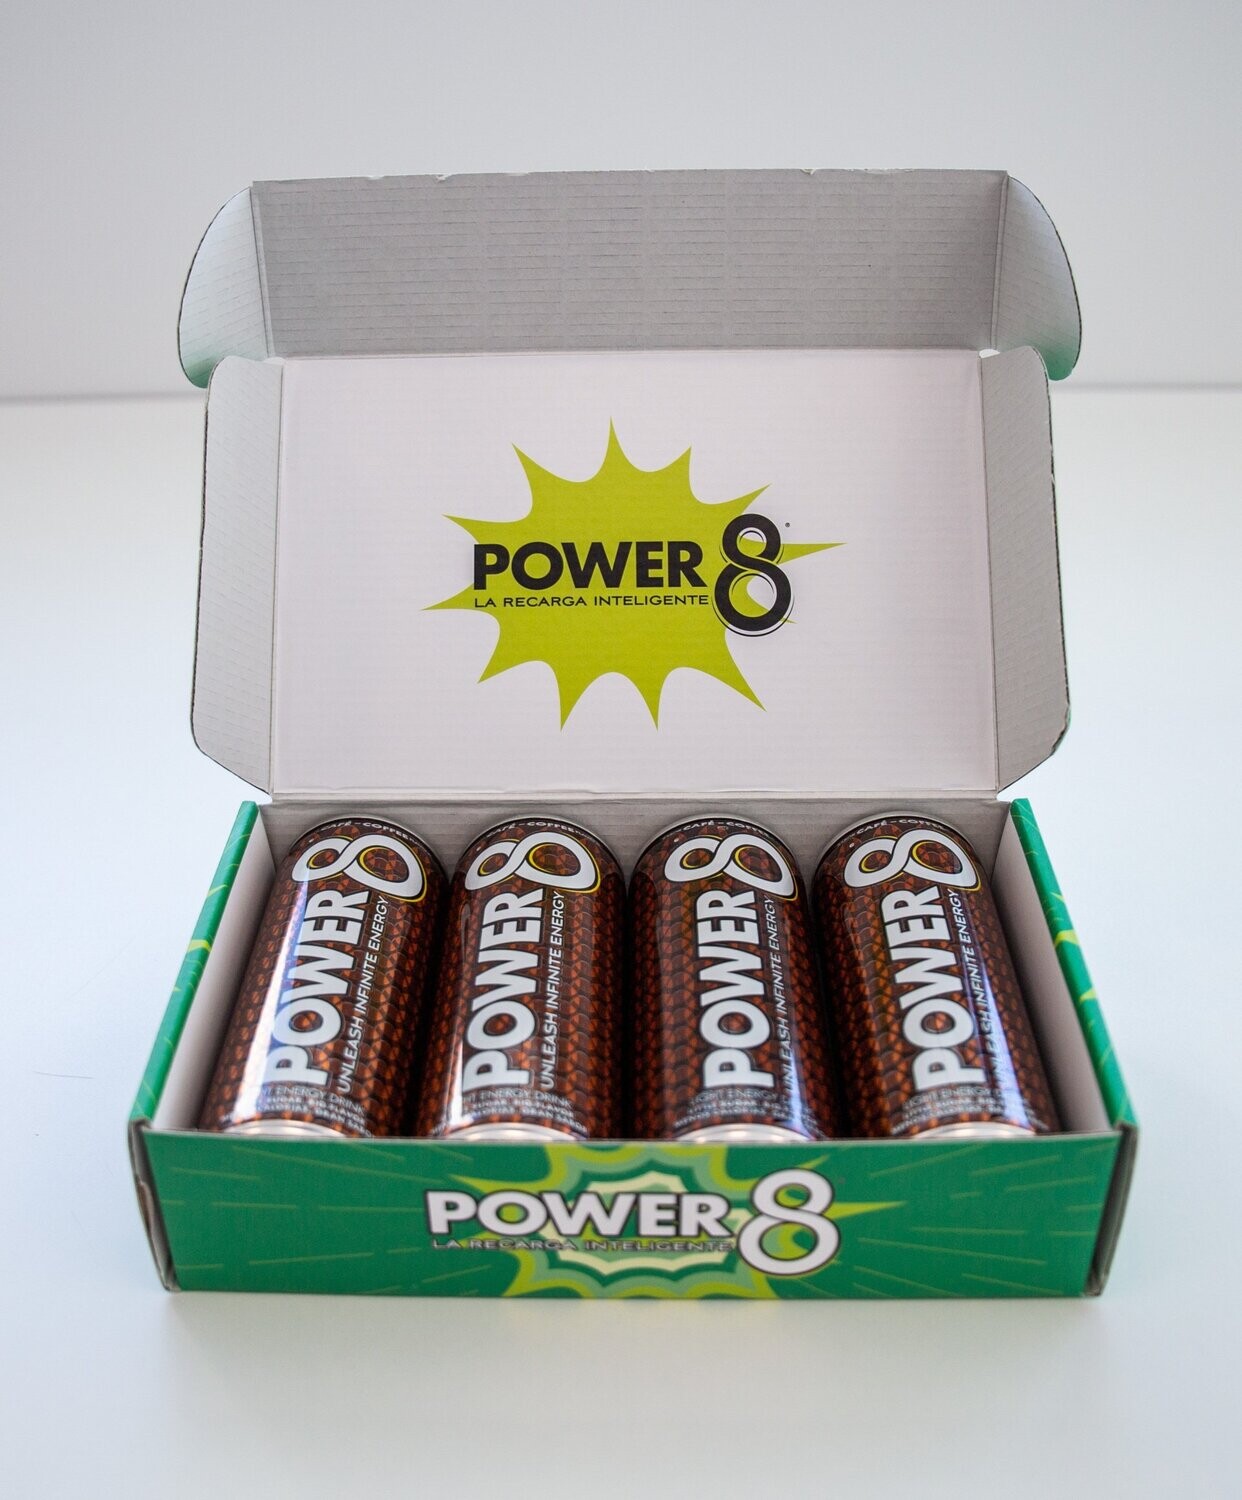 Power 8 Energy Drink LIGHT Sabor Café- Caja 4 latas - La primera bebida energética saludable es Power 8